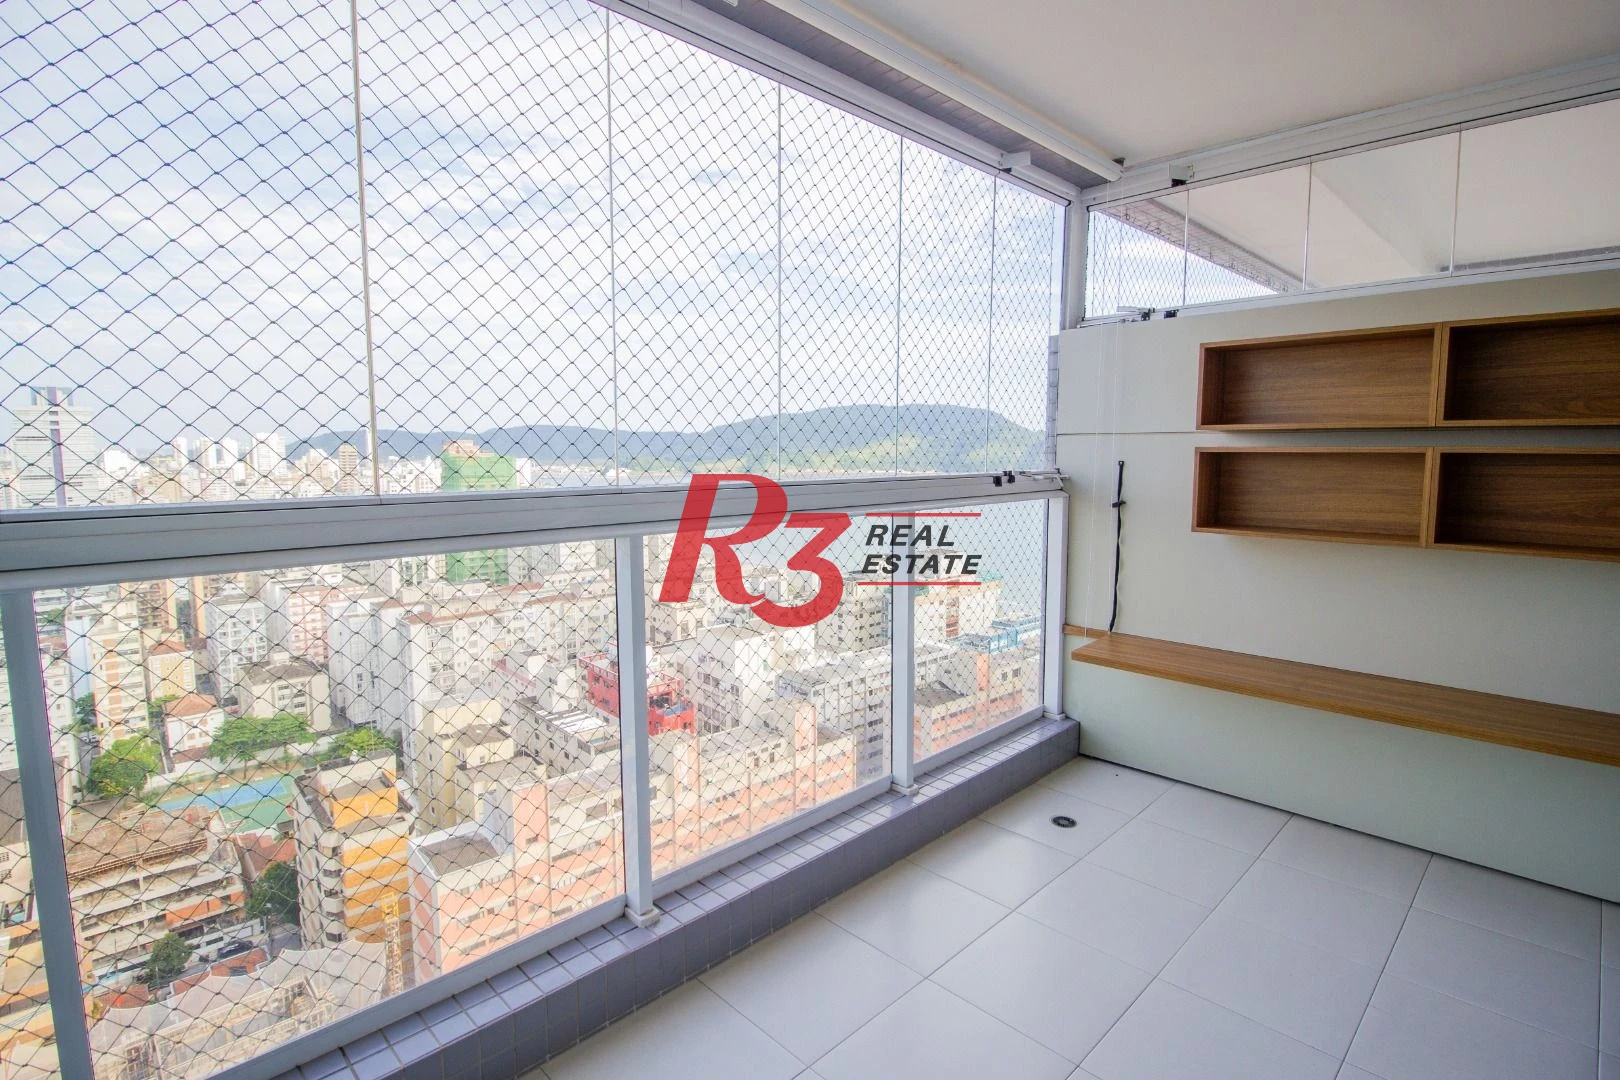 Apartamento Duplex com 4 dormitórios à venda, 240 m² por R$ 4.500.000,00 - Embaré - Santos/SP